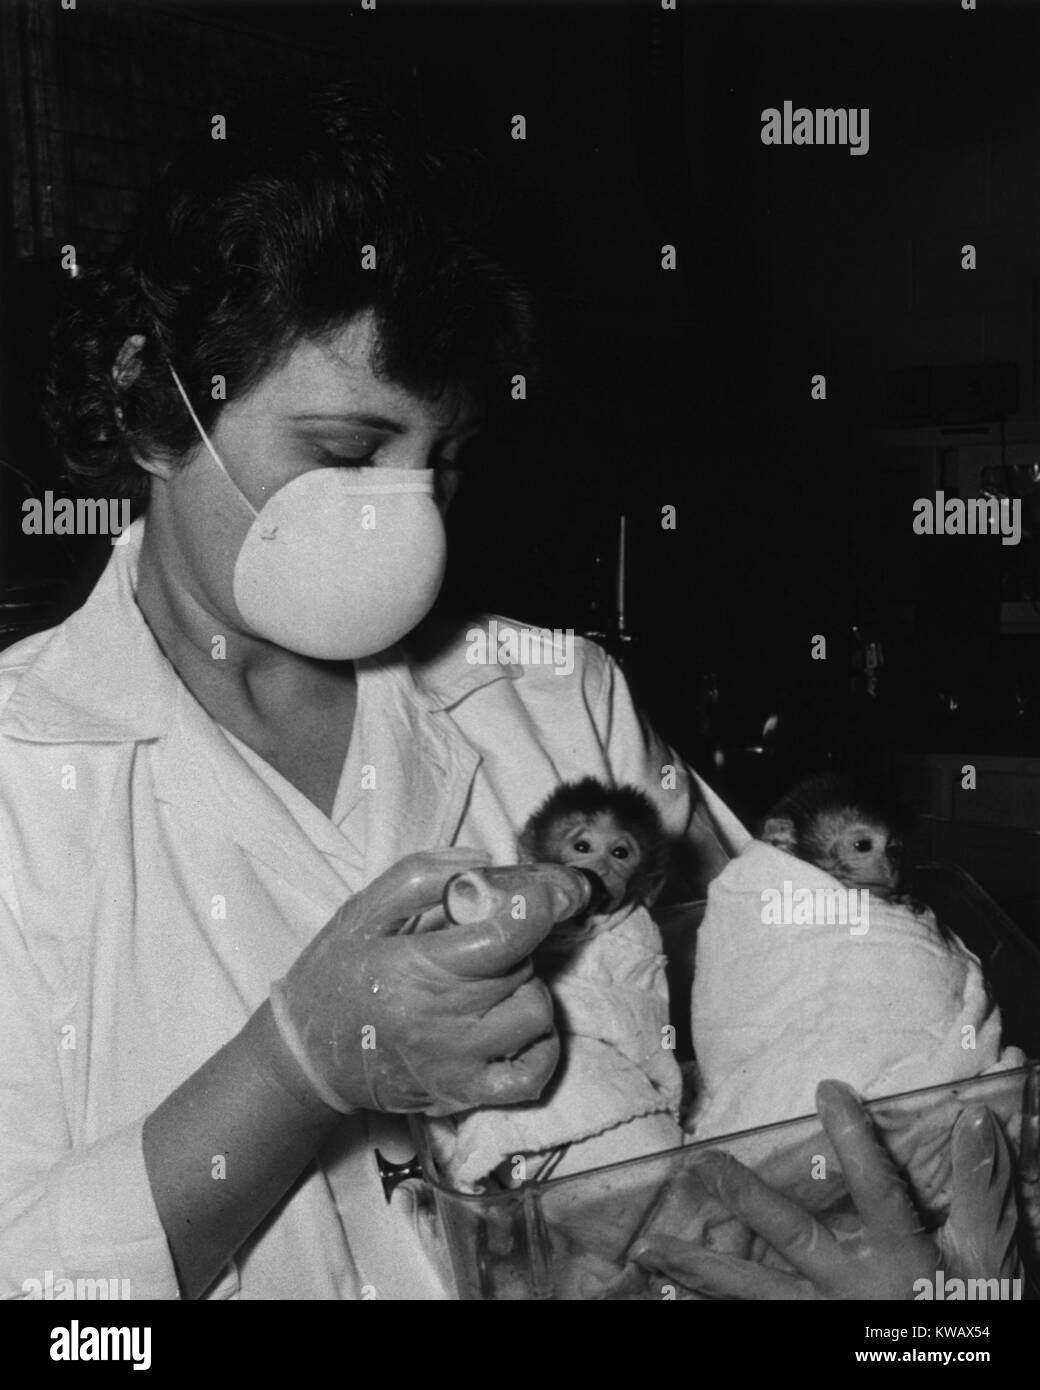 Technicien de laboratoire femelle est titulaire et alimente deux bébé singe, 1940. La permission de la National Library of Medicine. Banque D'Images